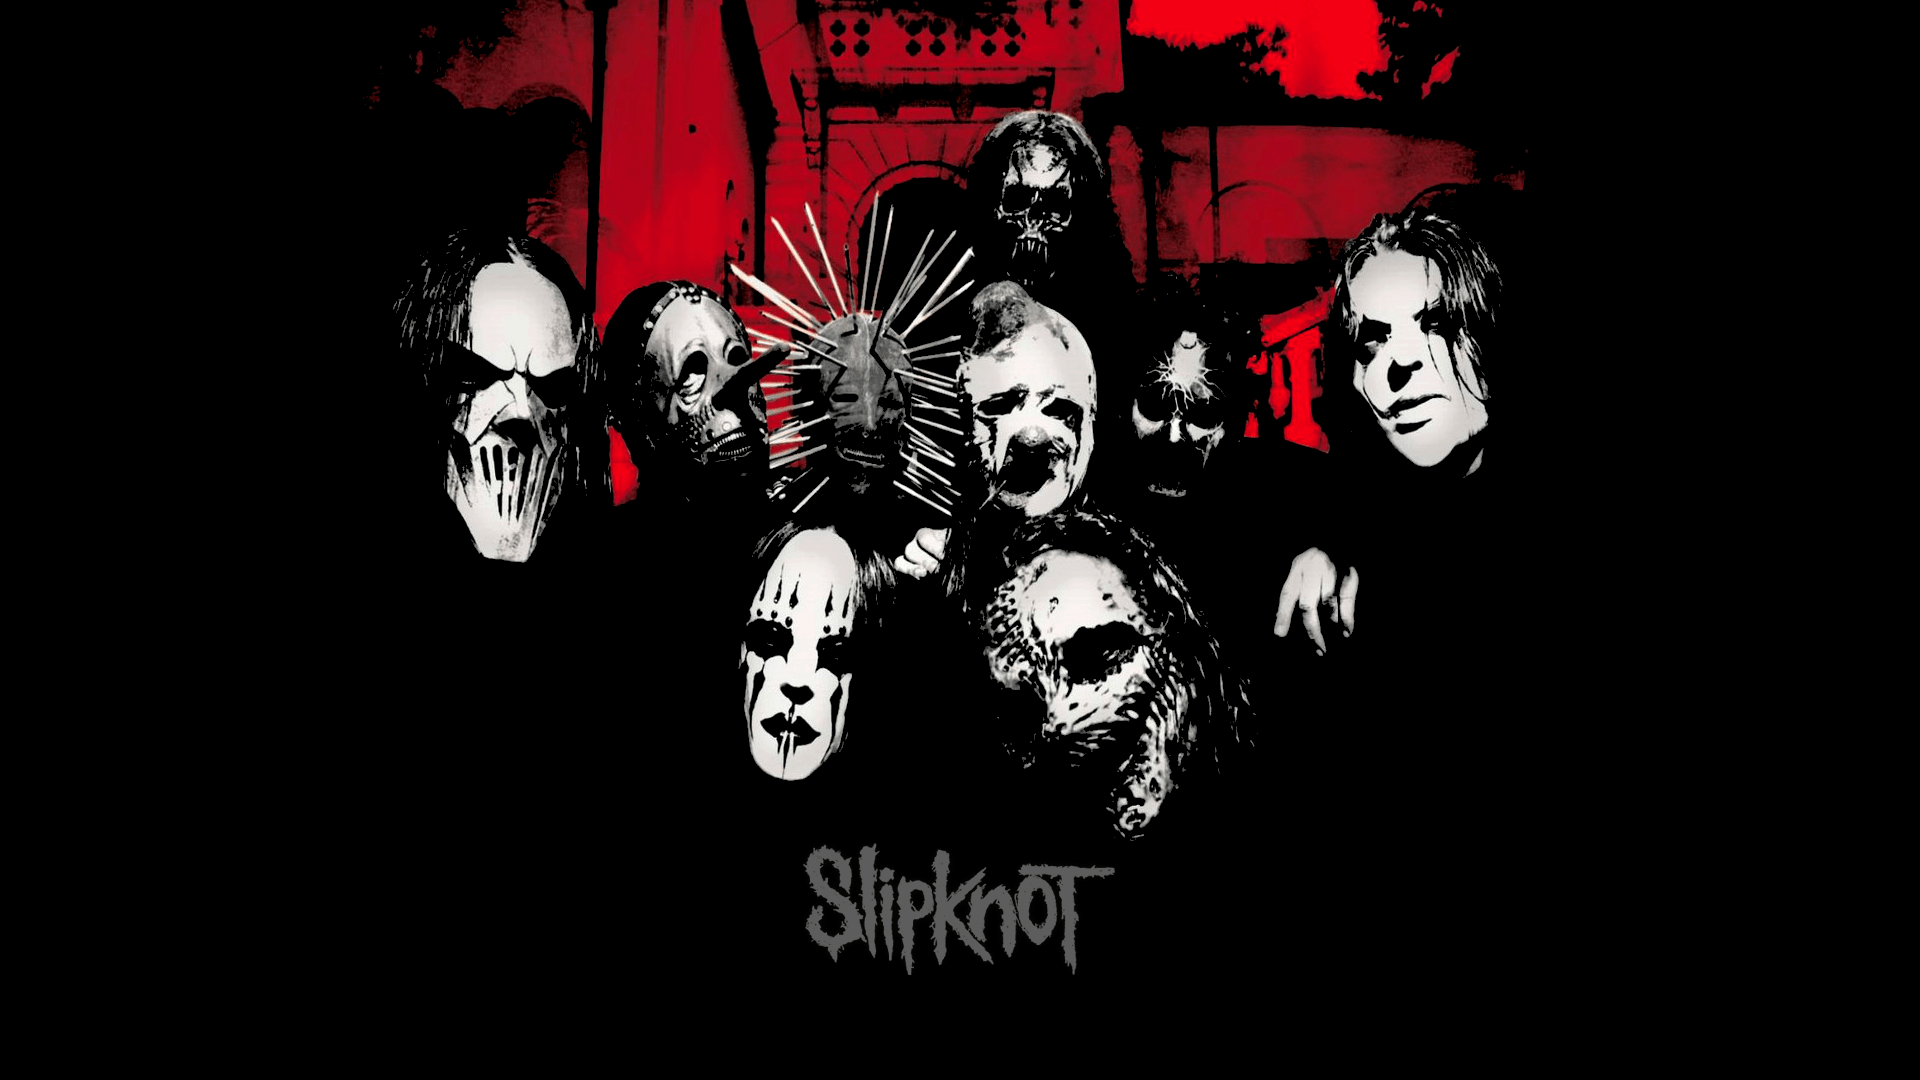 Slipknot - Vol3 The Subliminal VersesHD Full Album